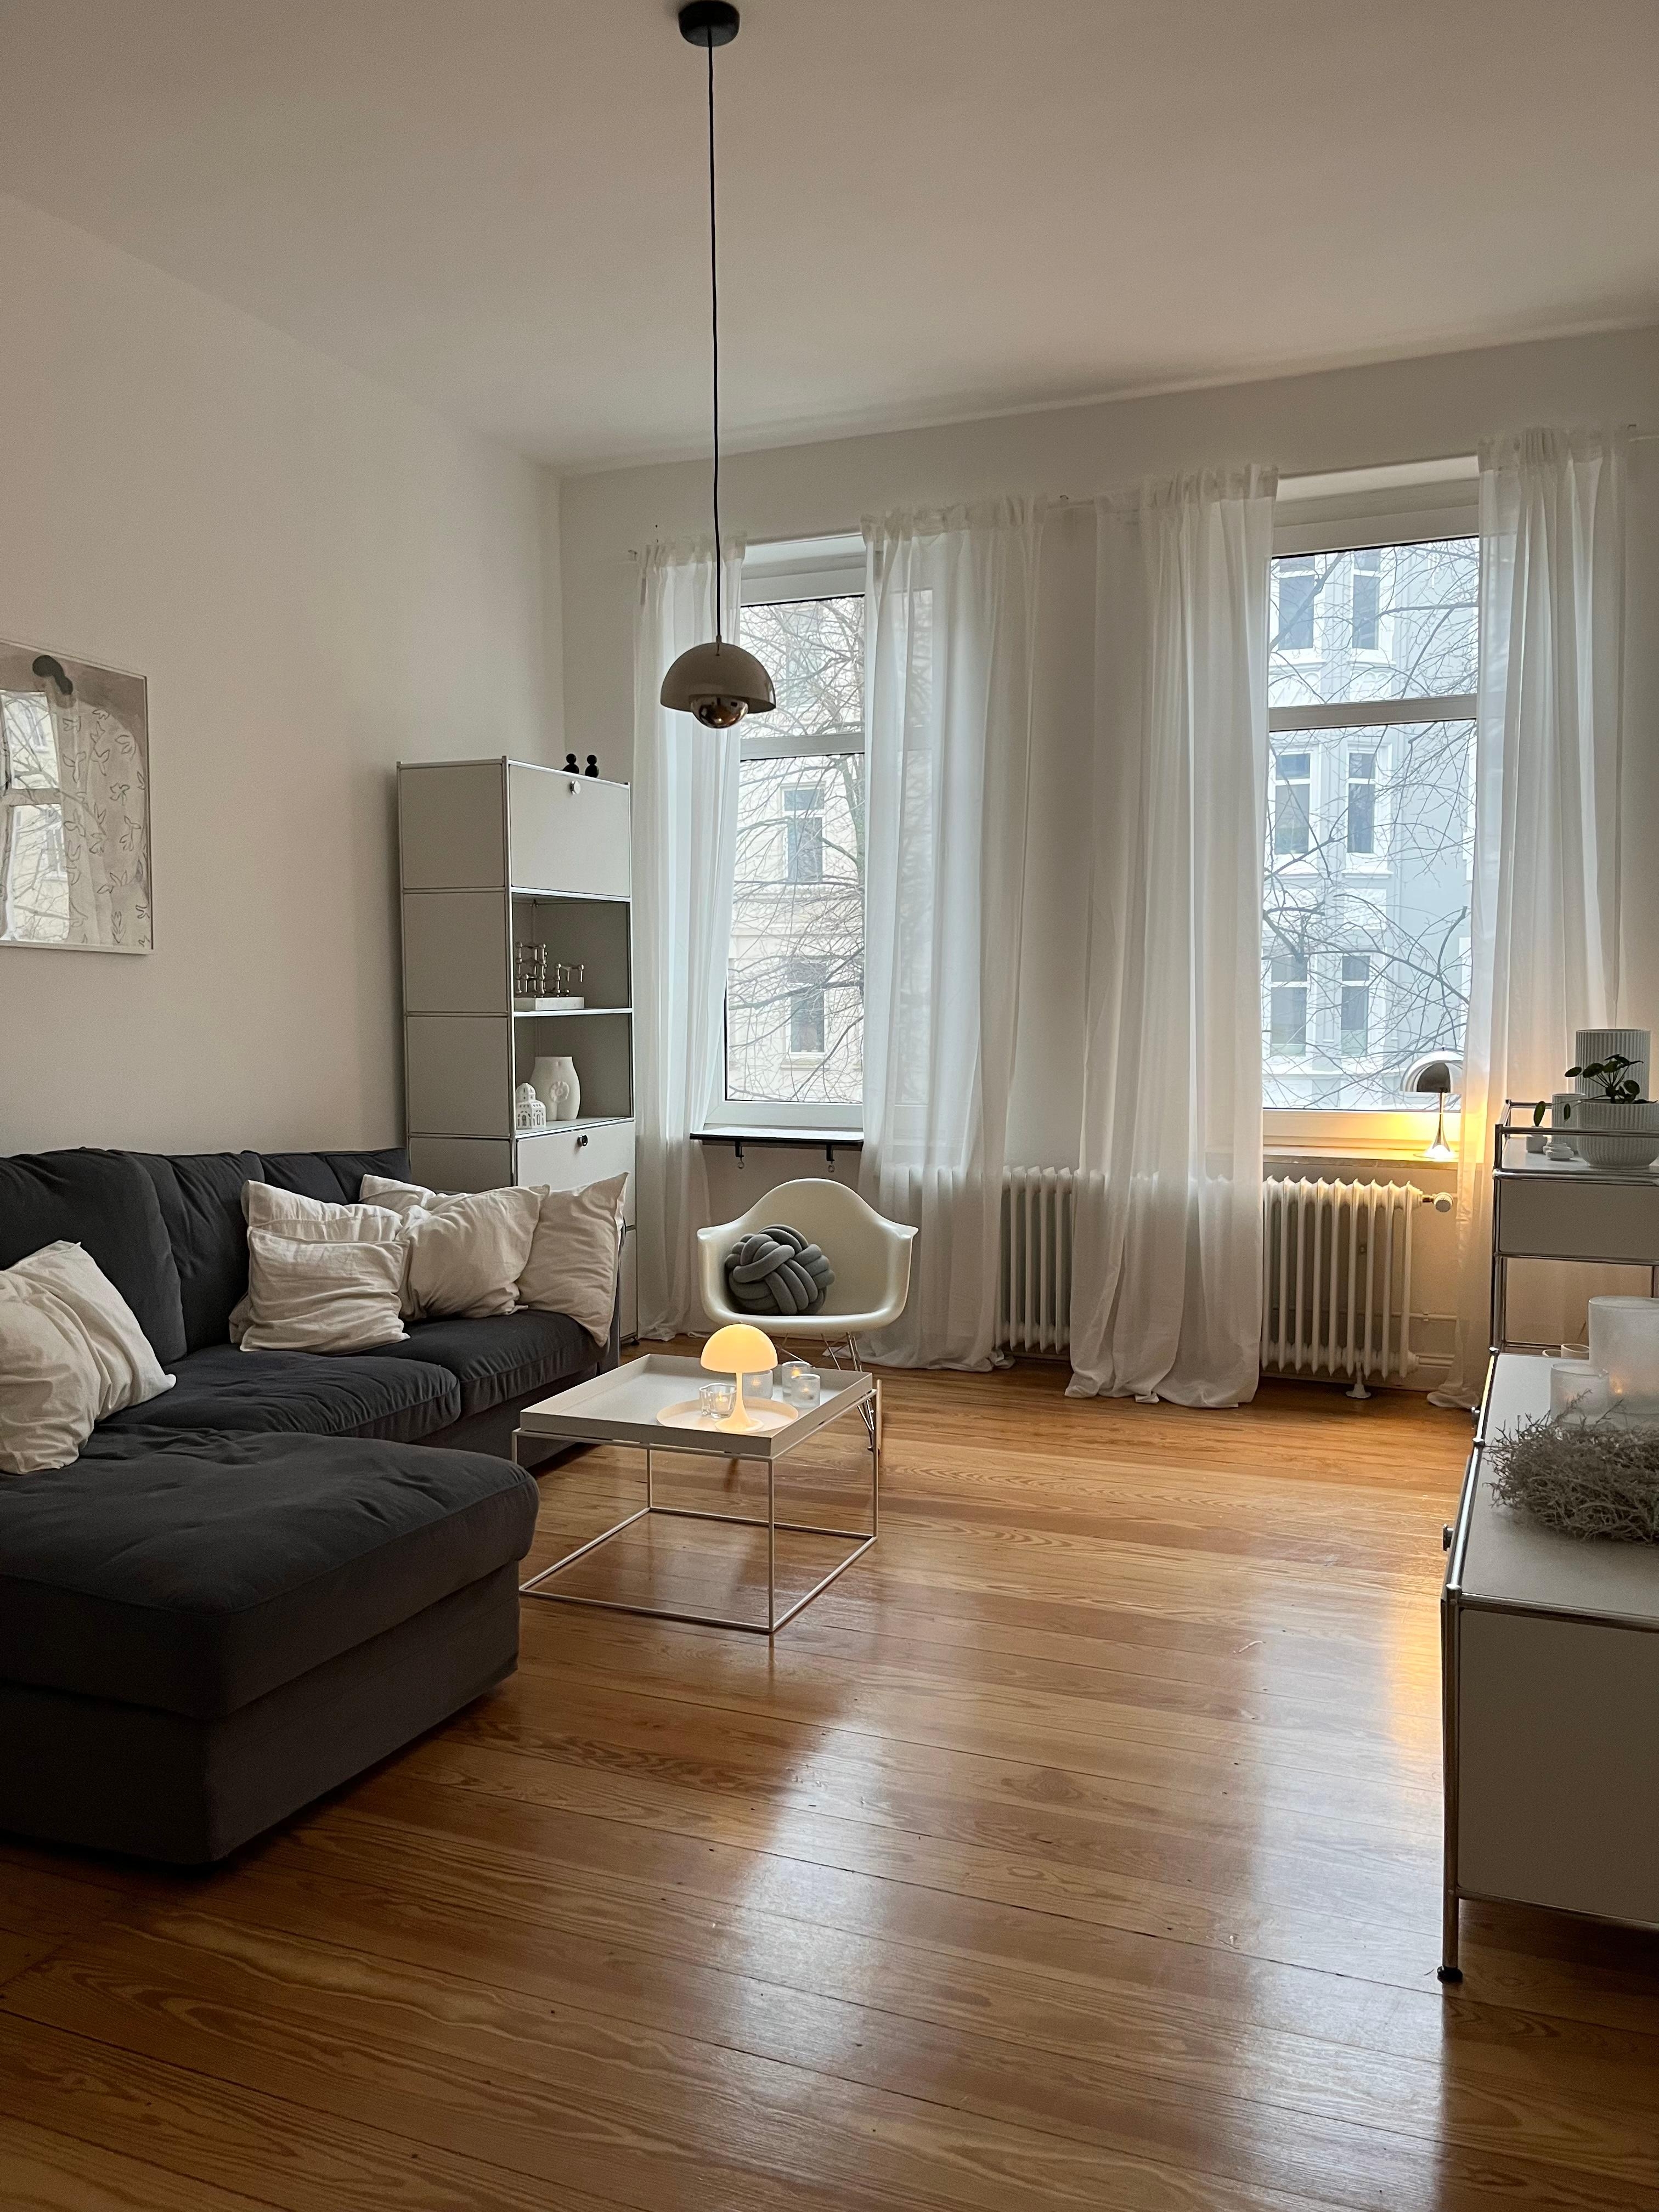 #wohnzimmer #livingroominspo #skandinavischwohnen #hygge #altbauwohnung 